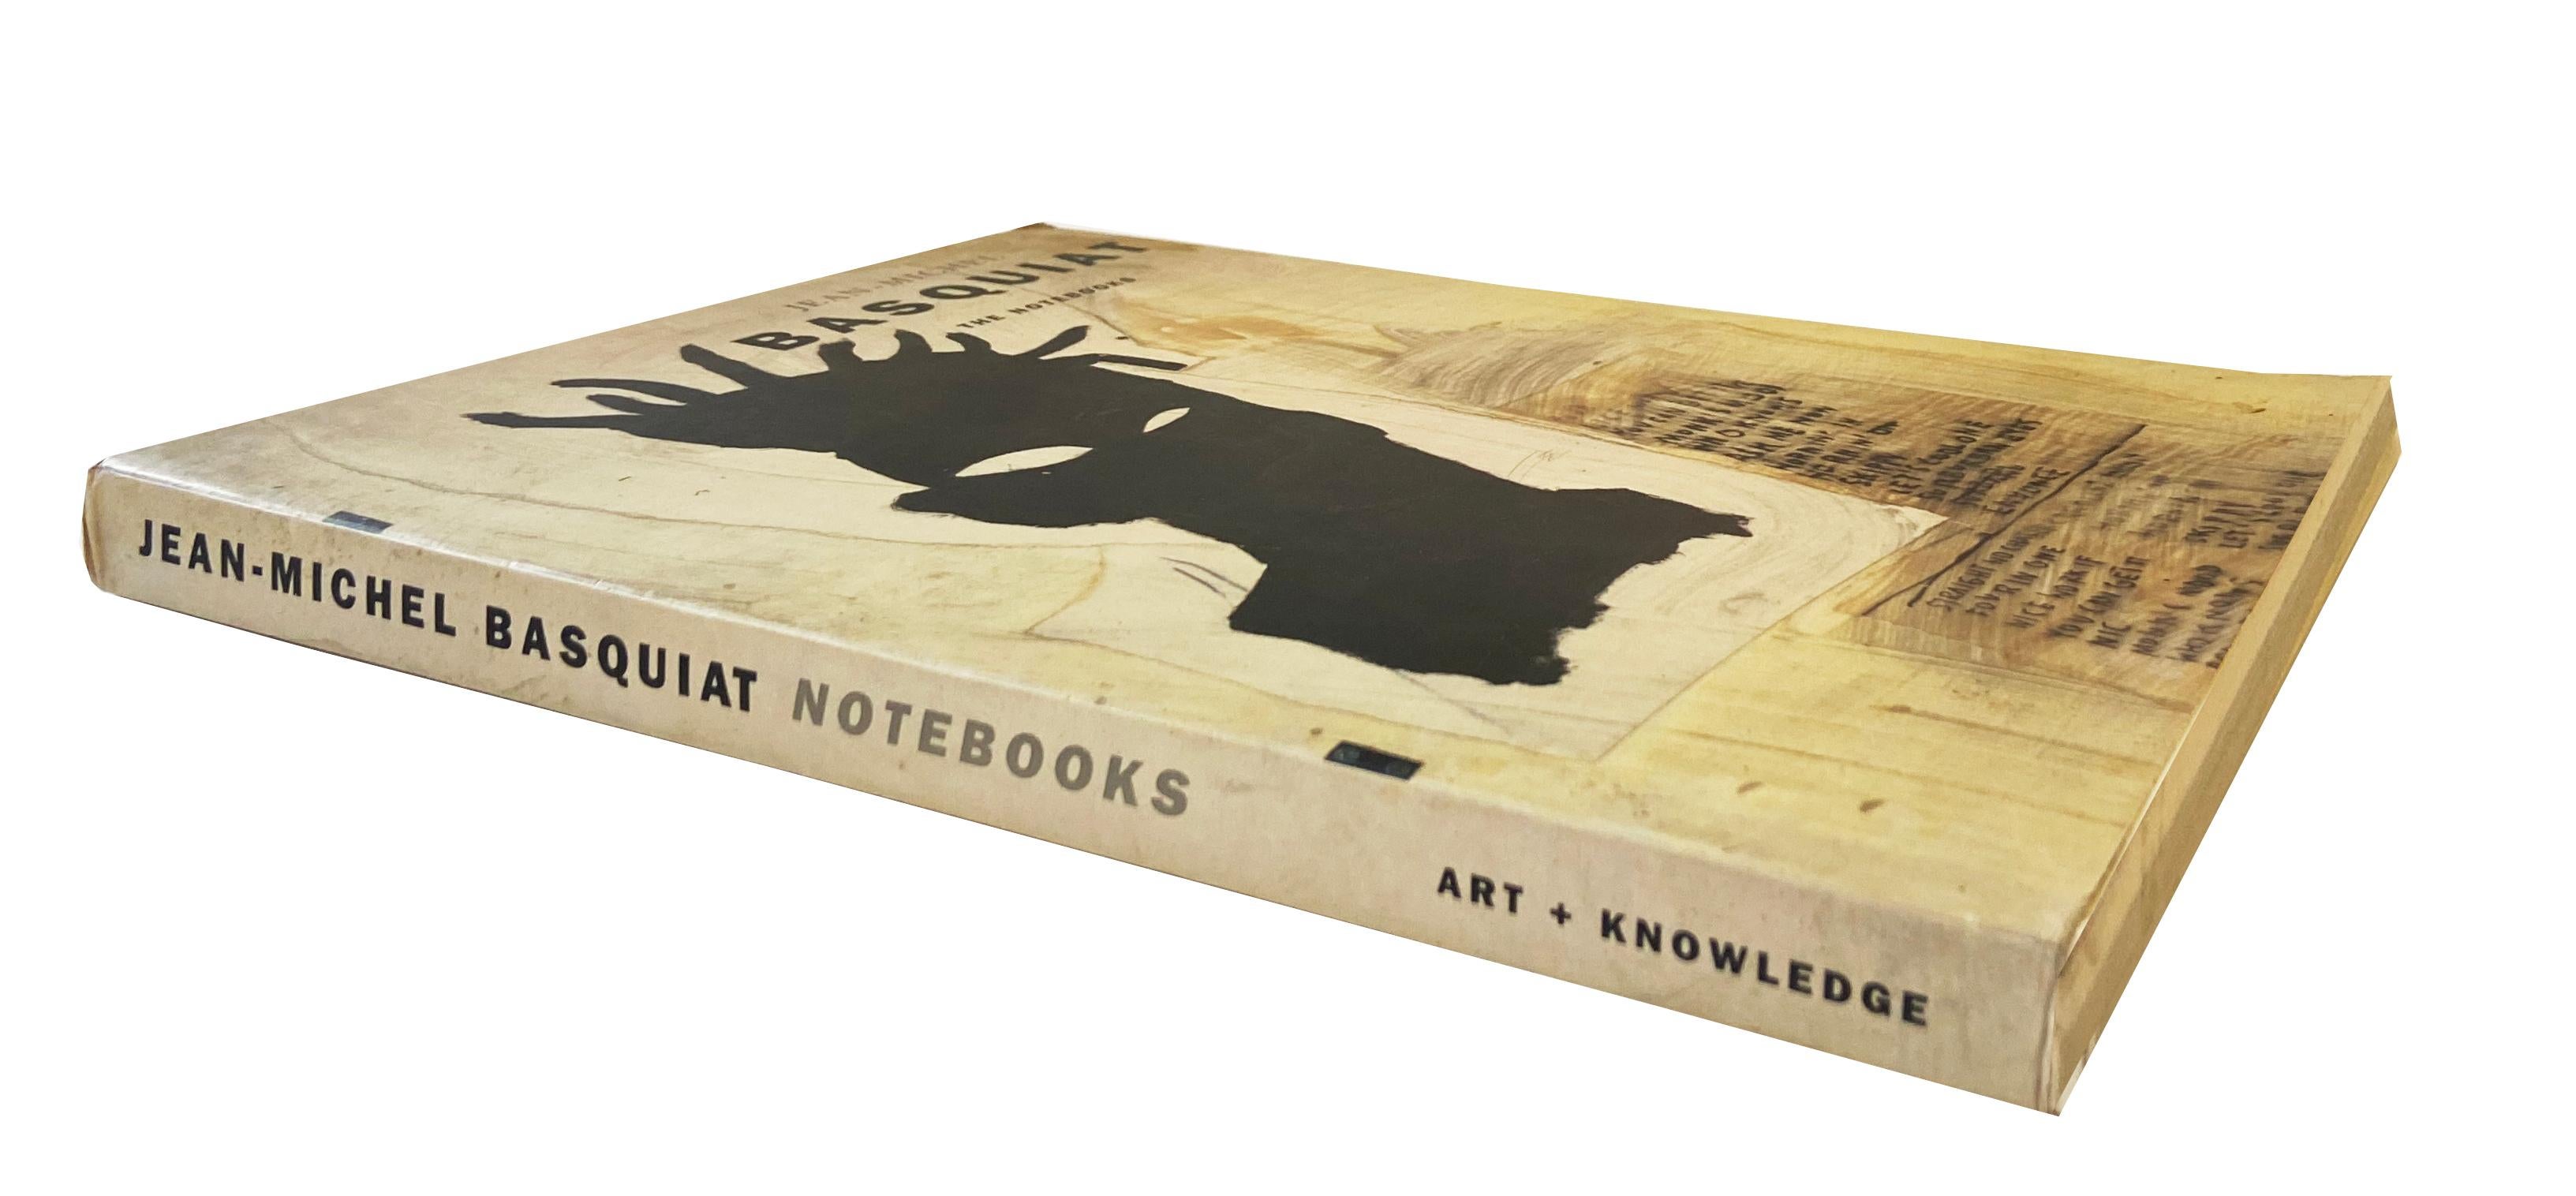 Jean-Michel Basquiat The Notebooks 1993 (catalogue) :
Une vue d'ensemble illustrée de l'histoire des carnets de Basquiat. Première édition du début des années 1990, avec une introduction de Henry Geldzahler et des essais de Jeffrey Deitch, entre